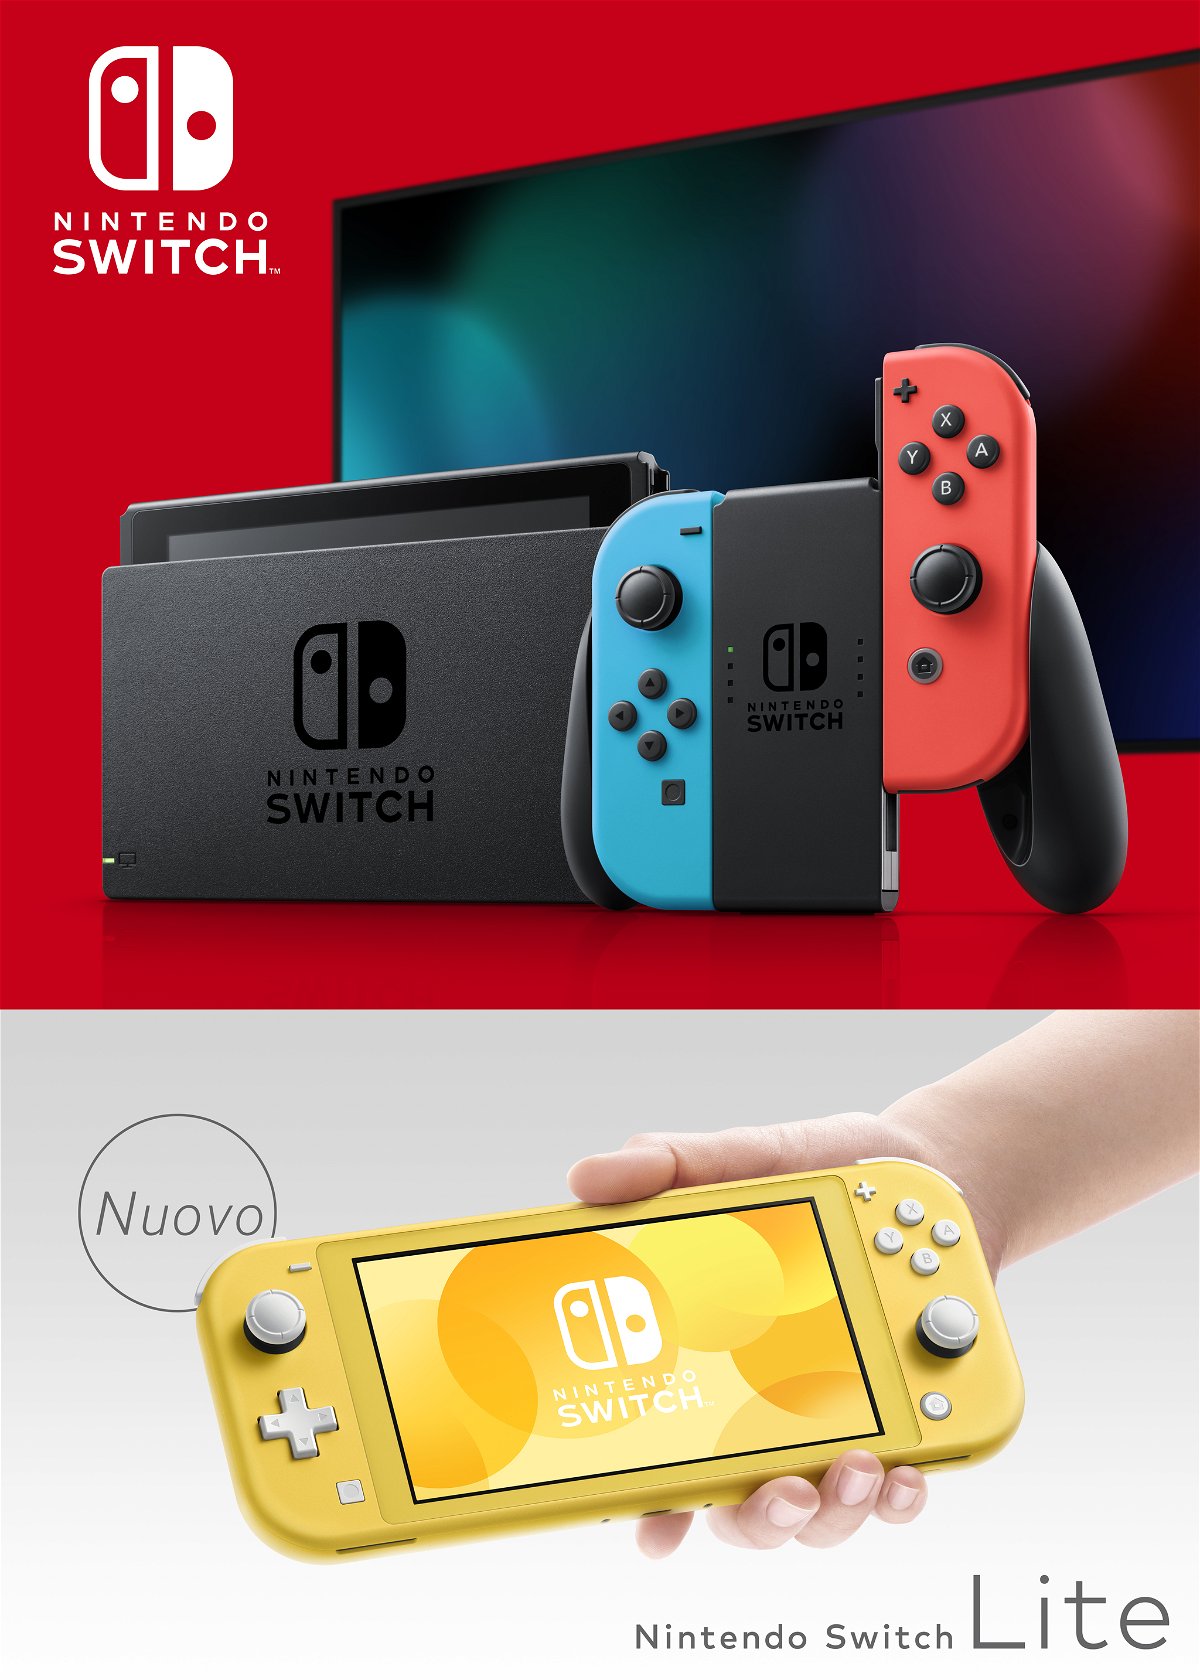 Nintendo Switch e Nintenod Switch Lite, che compongono la famiglia di console Switch